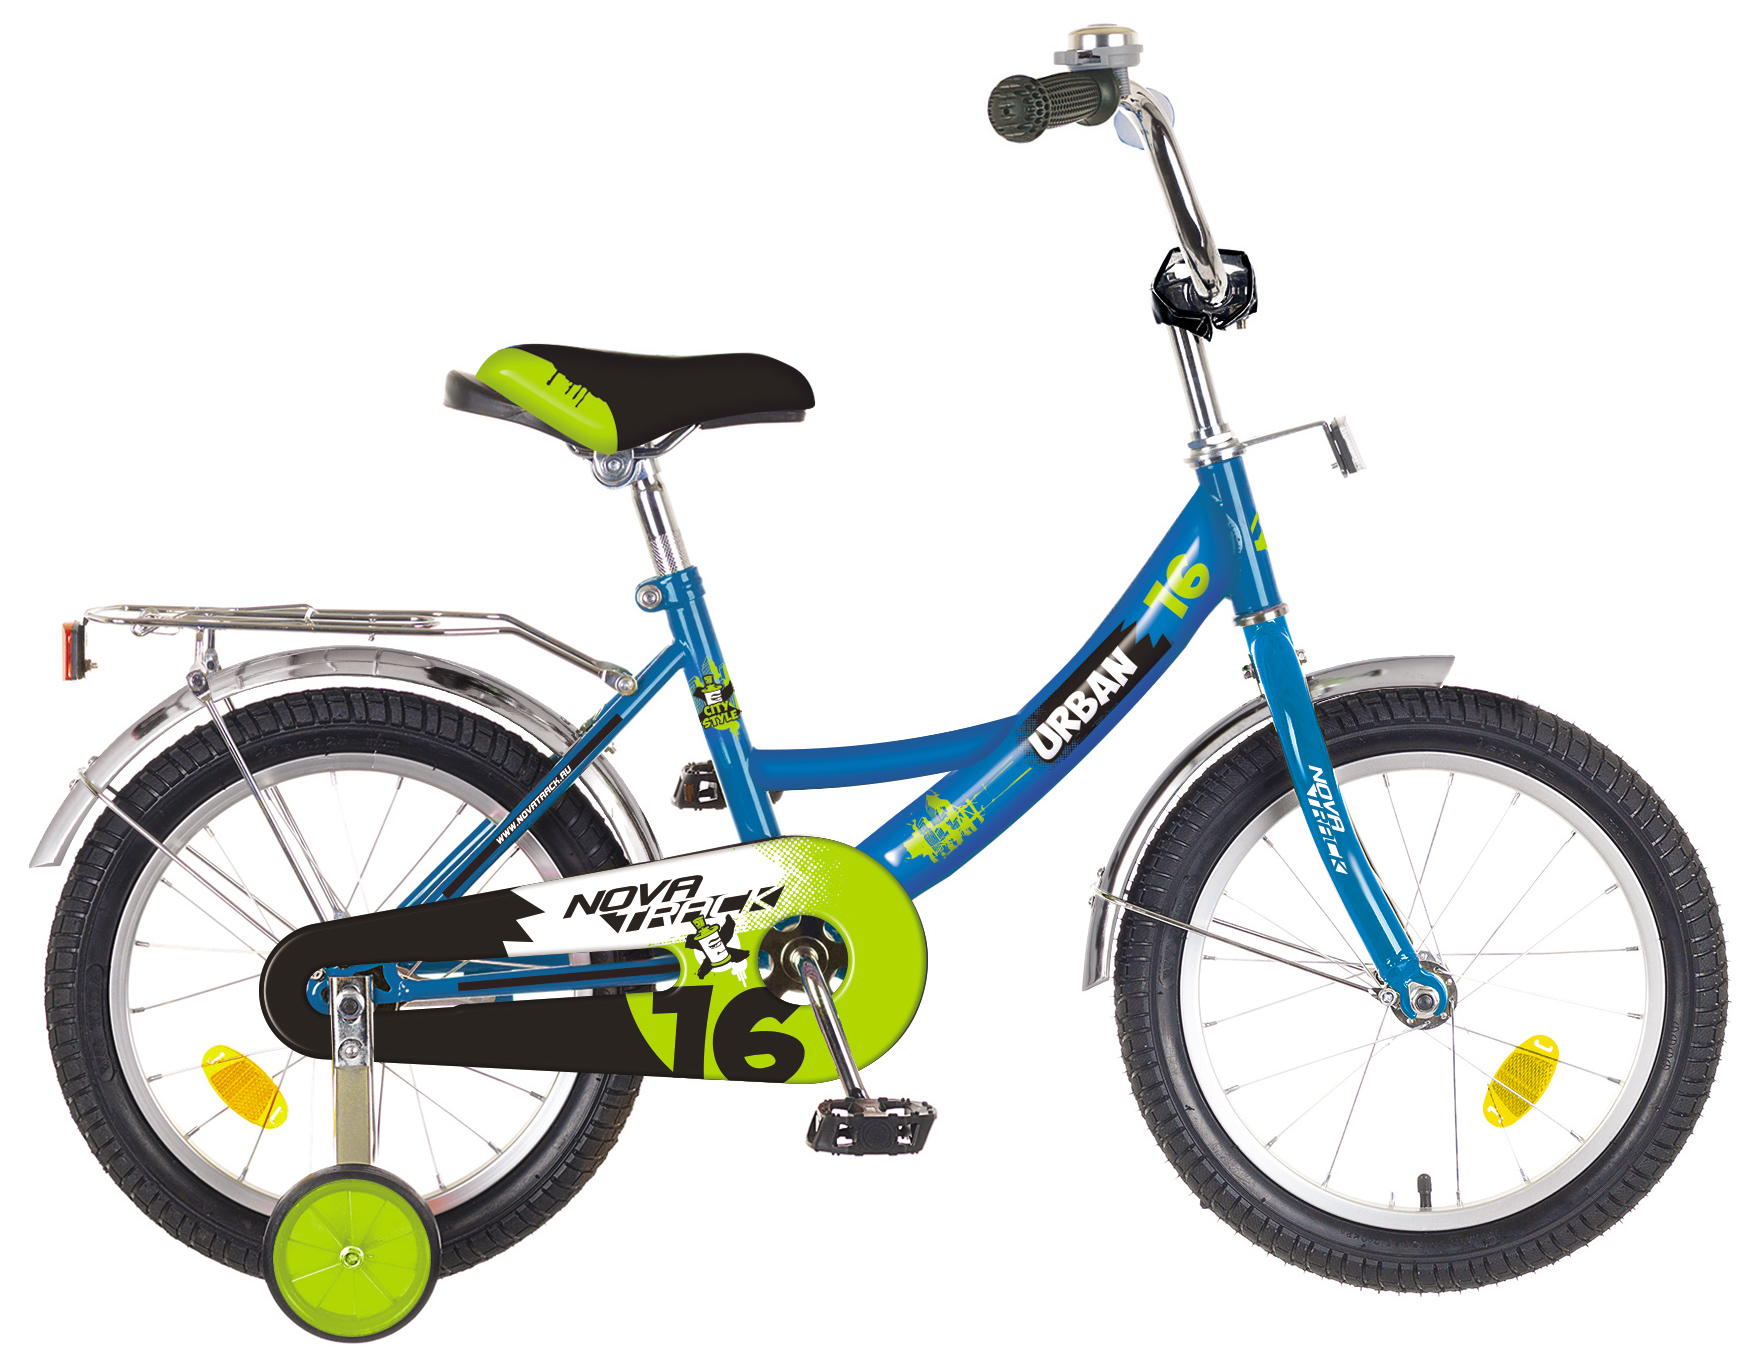  Отзывы о Детском велосипеде Novatrack Urban 16 2019